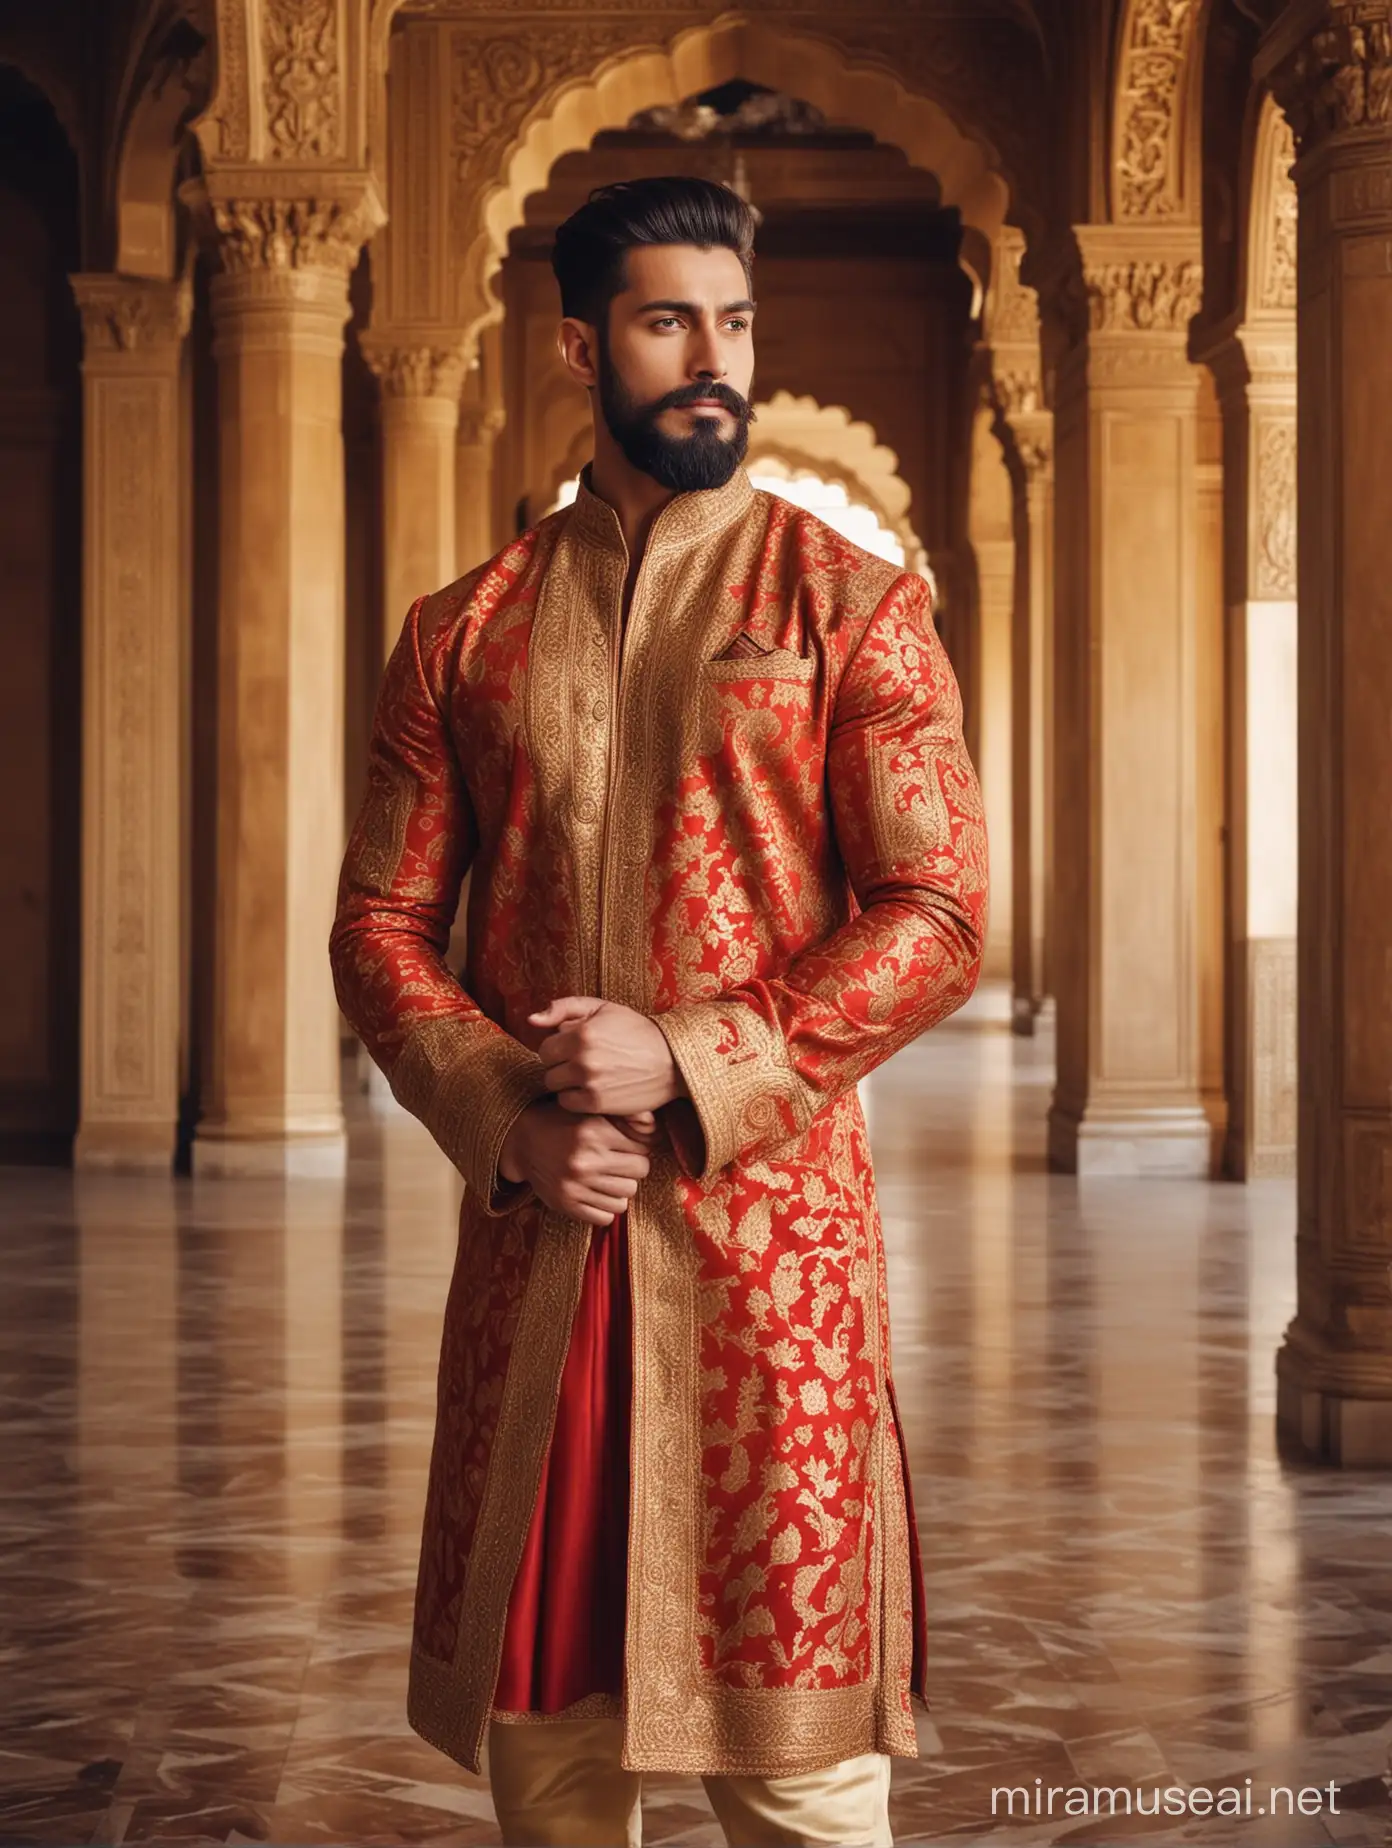 Handsome Muscular Man in Golden Sherwani Displaying Biceps in Palace Setting